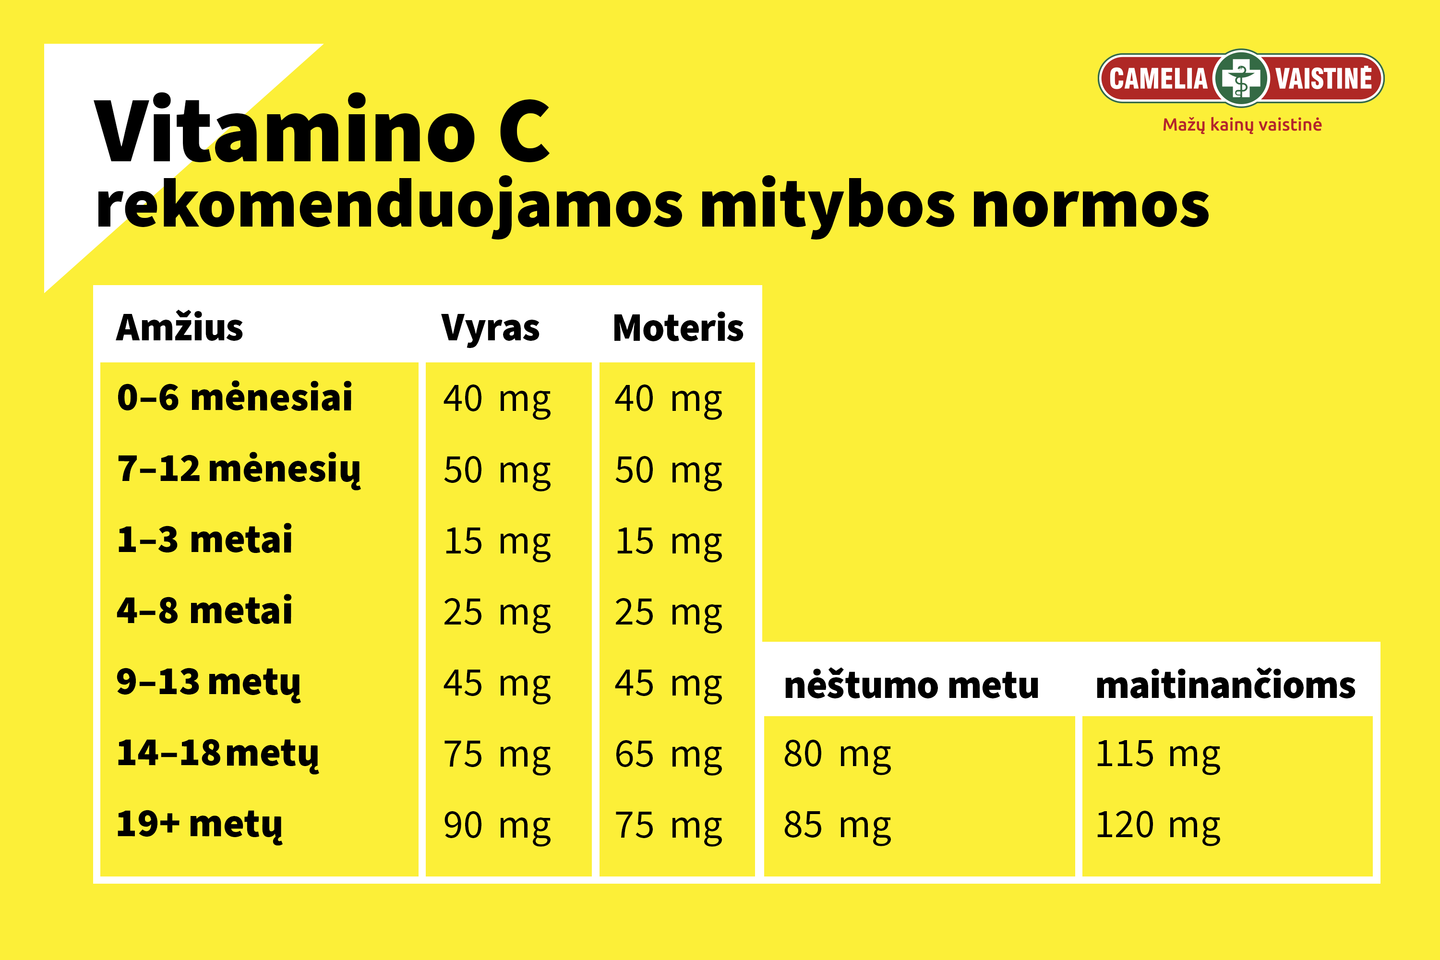 Rekomenduojamos vitamino C normos<br>Pranešimo spaudai nuotr.